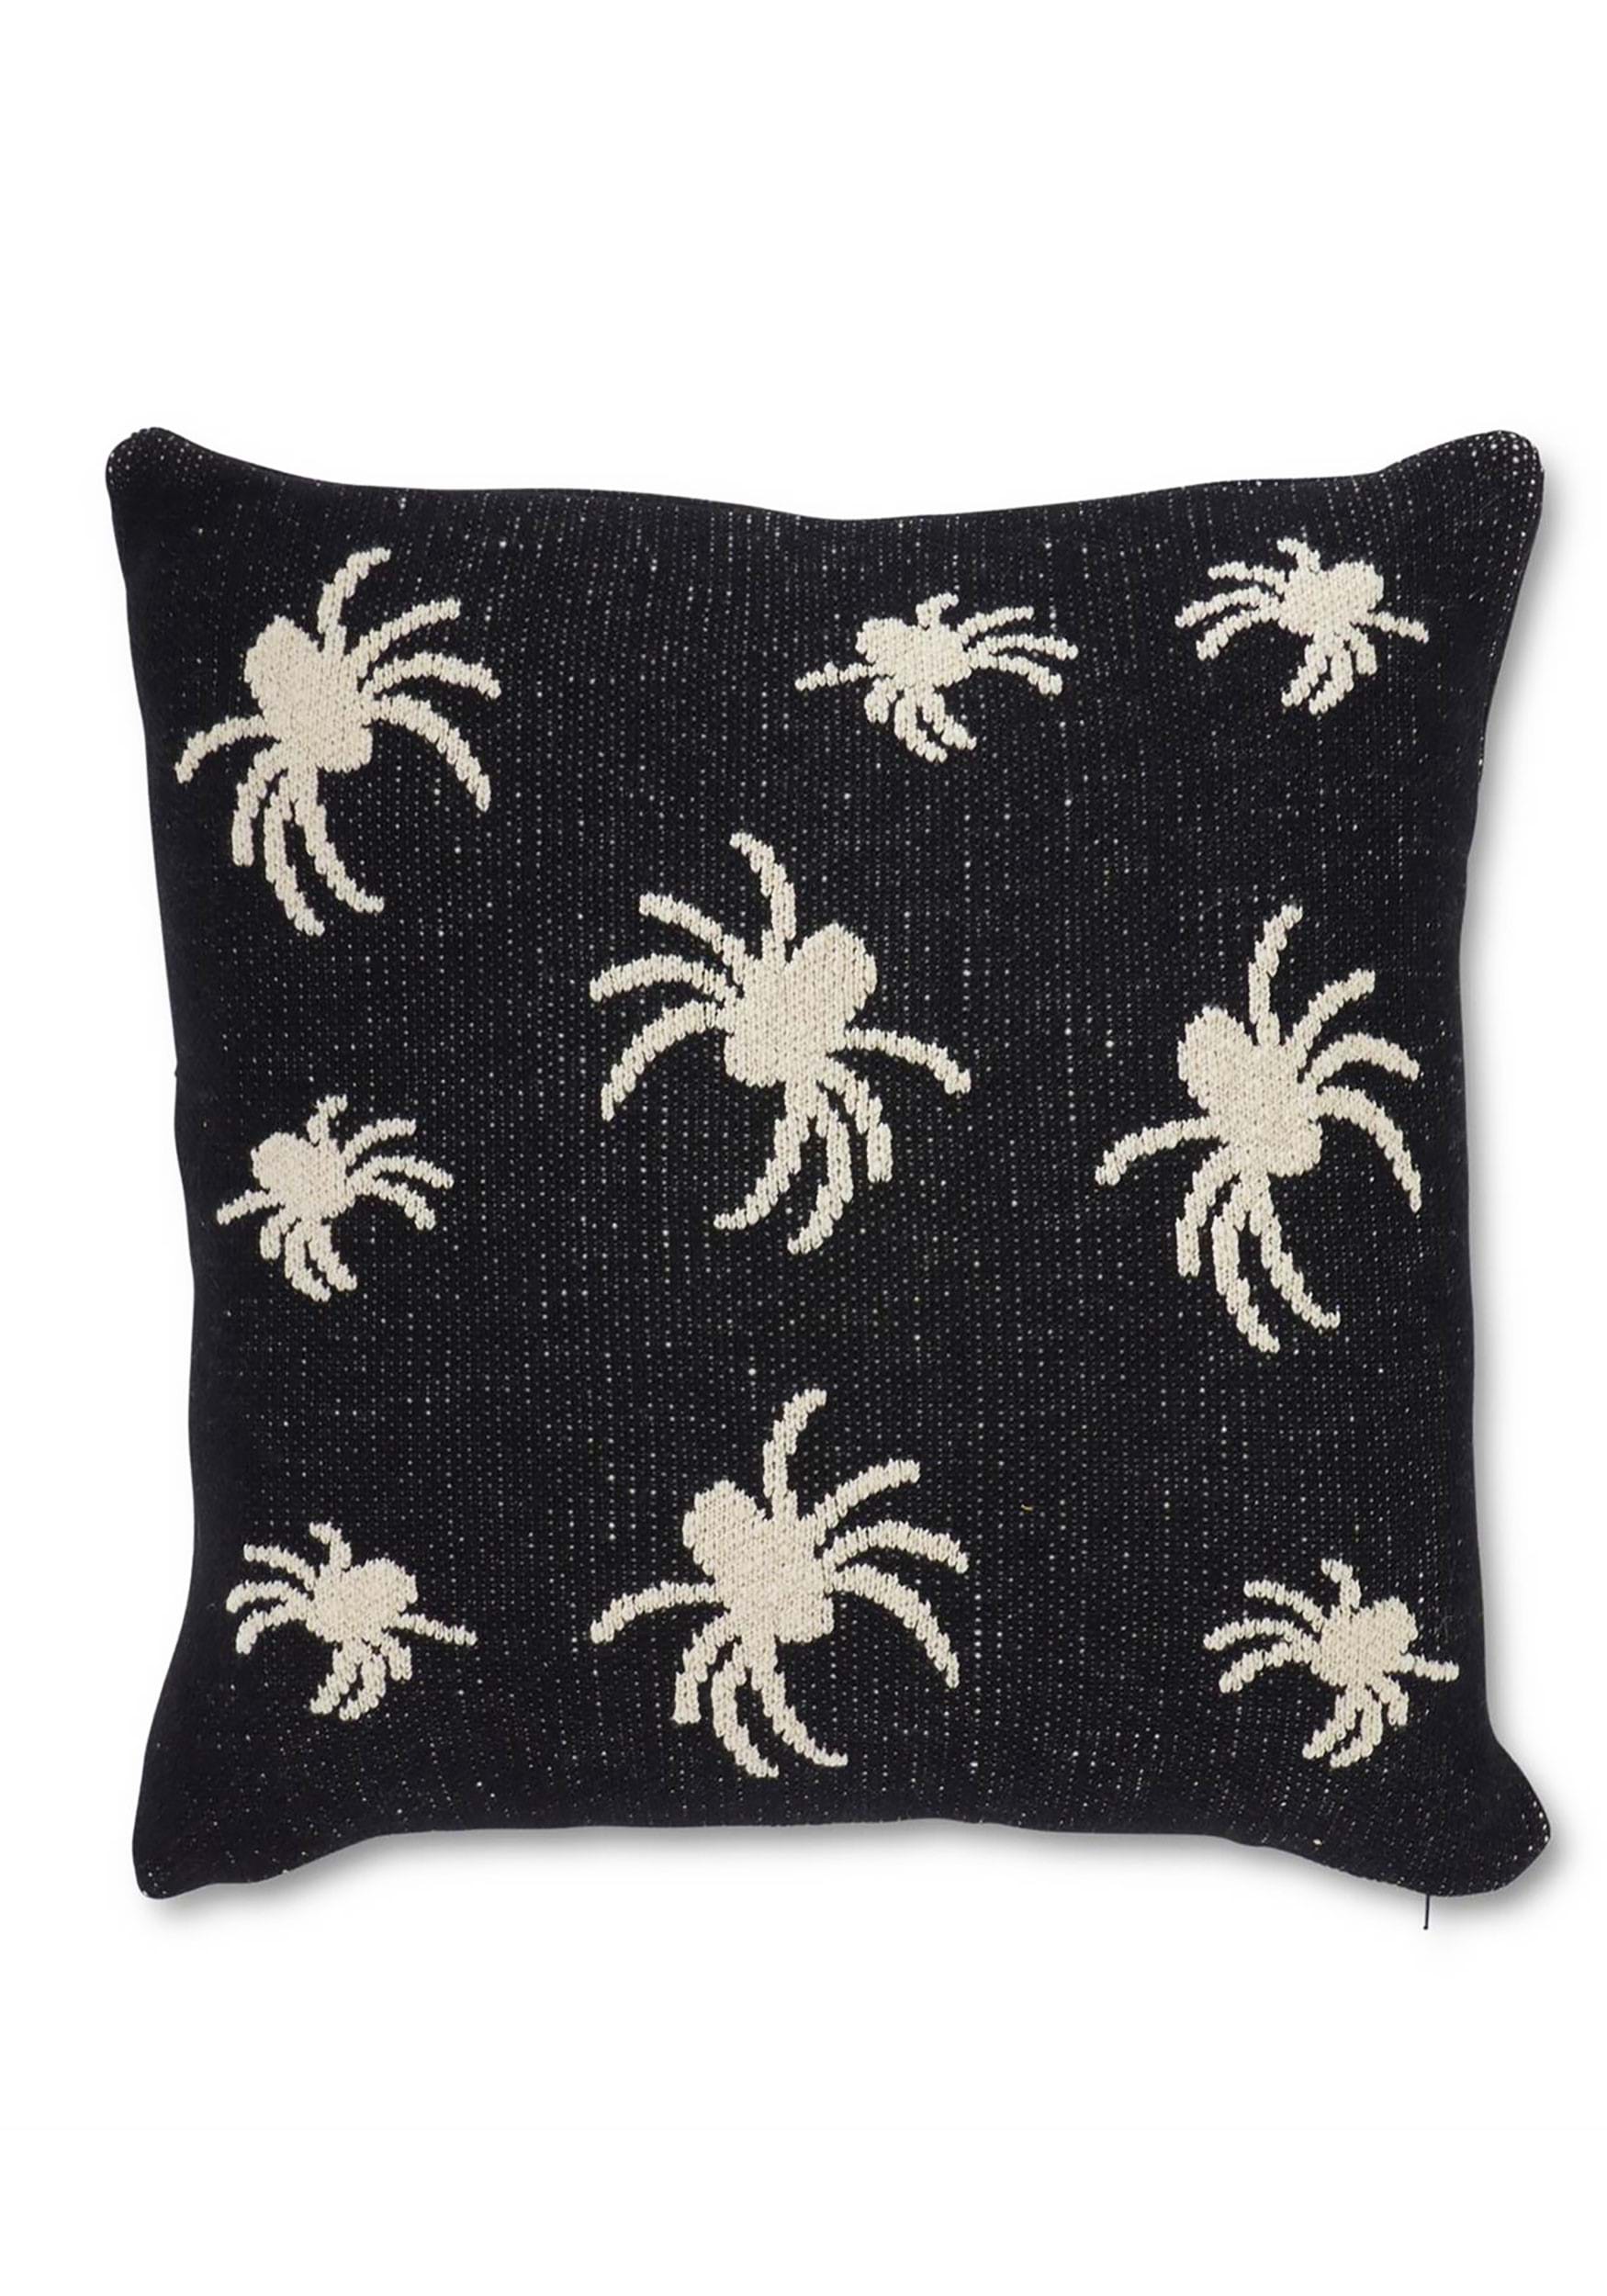 20-Inch Cotton Knit Black & Cream Spider Pillow , Halloween Decor